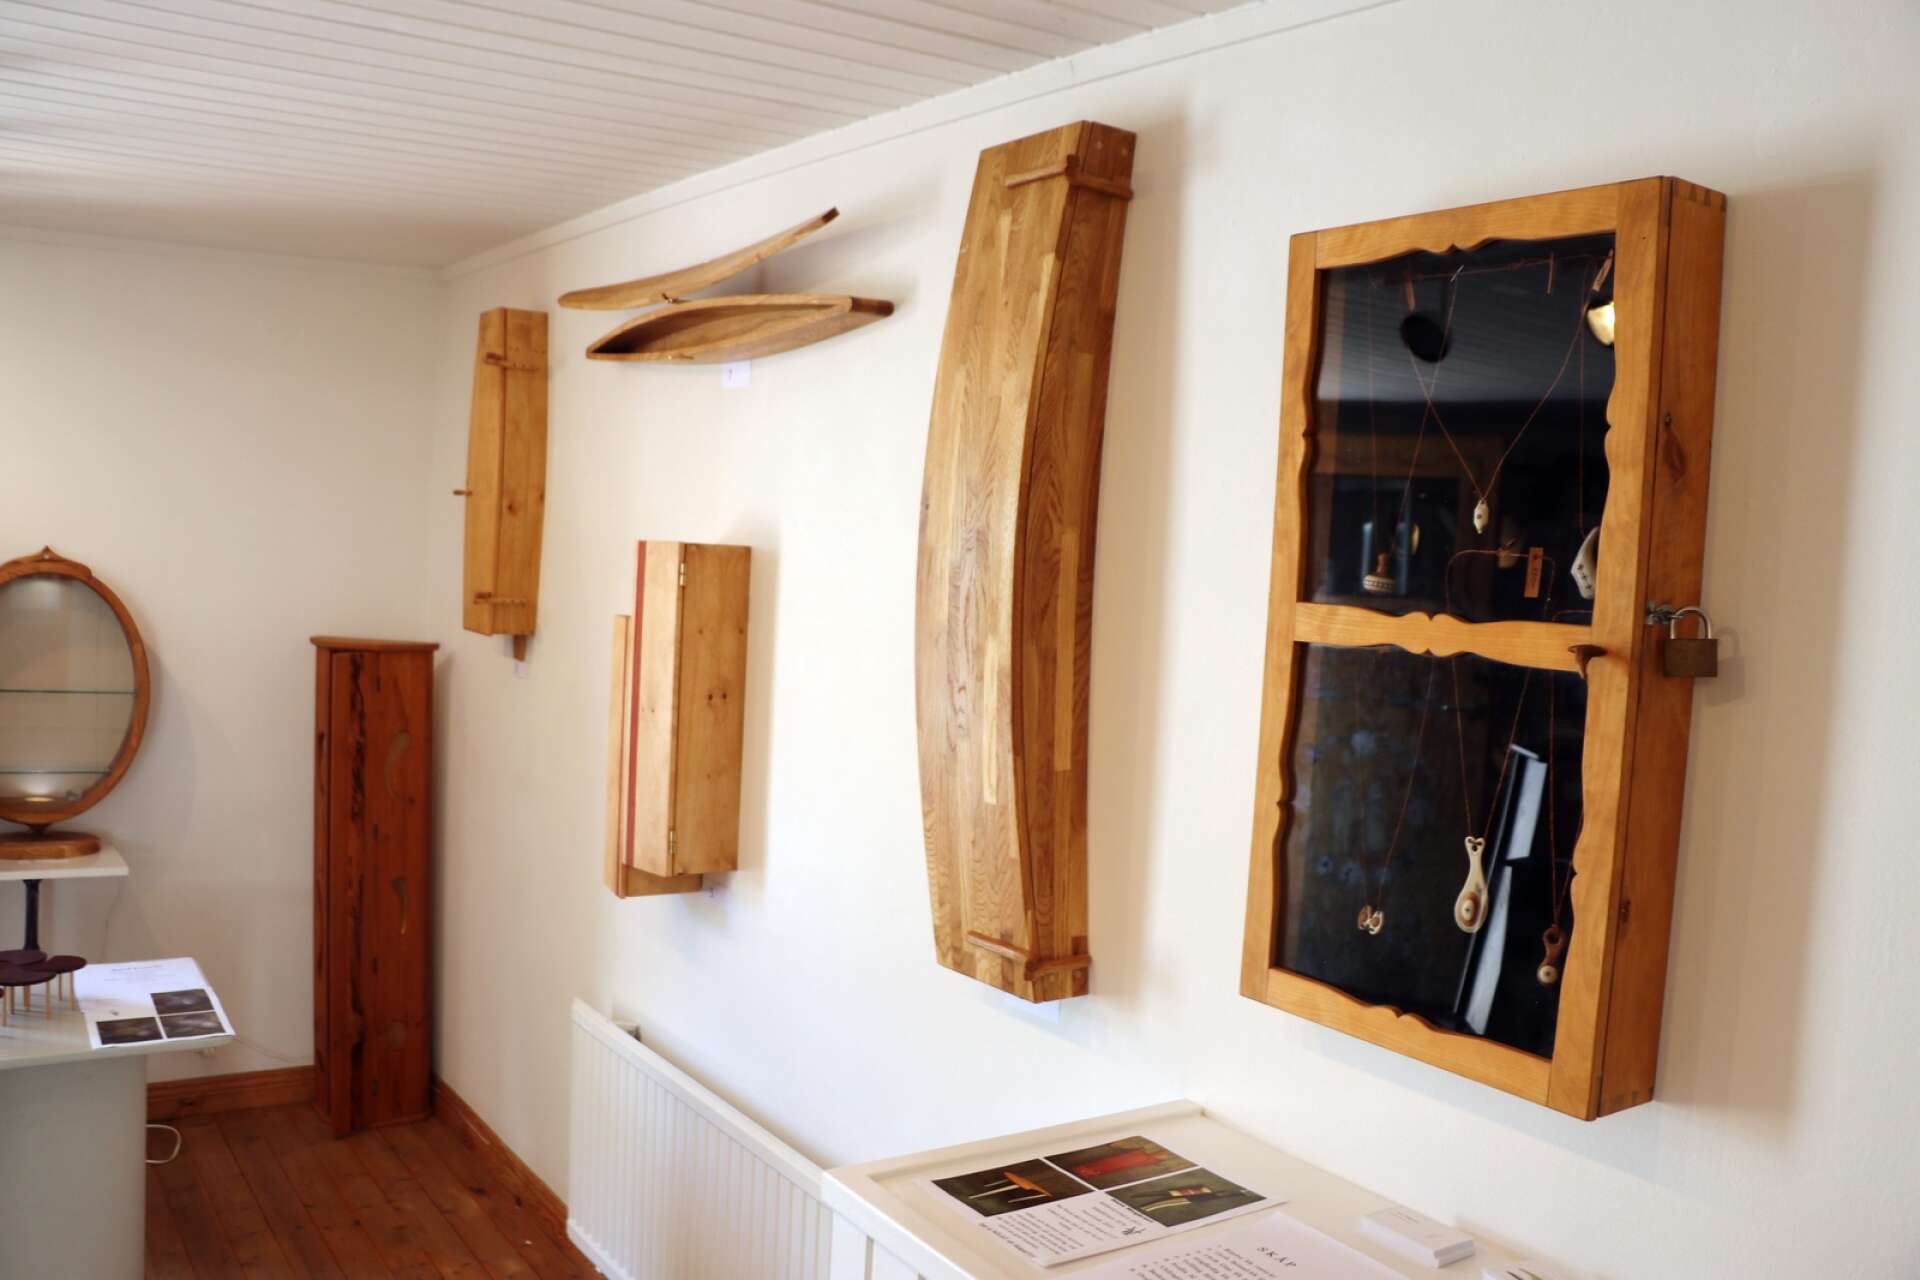 Bilden är tagen från Hans Wegbrants utställning i Åmål 2019. I år visar han väggskåp, golvskåp, renhornsknivar och smycken mellan 26 juni och 15 juli.